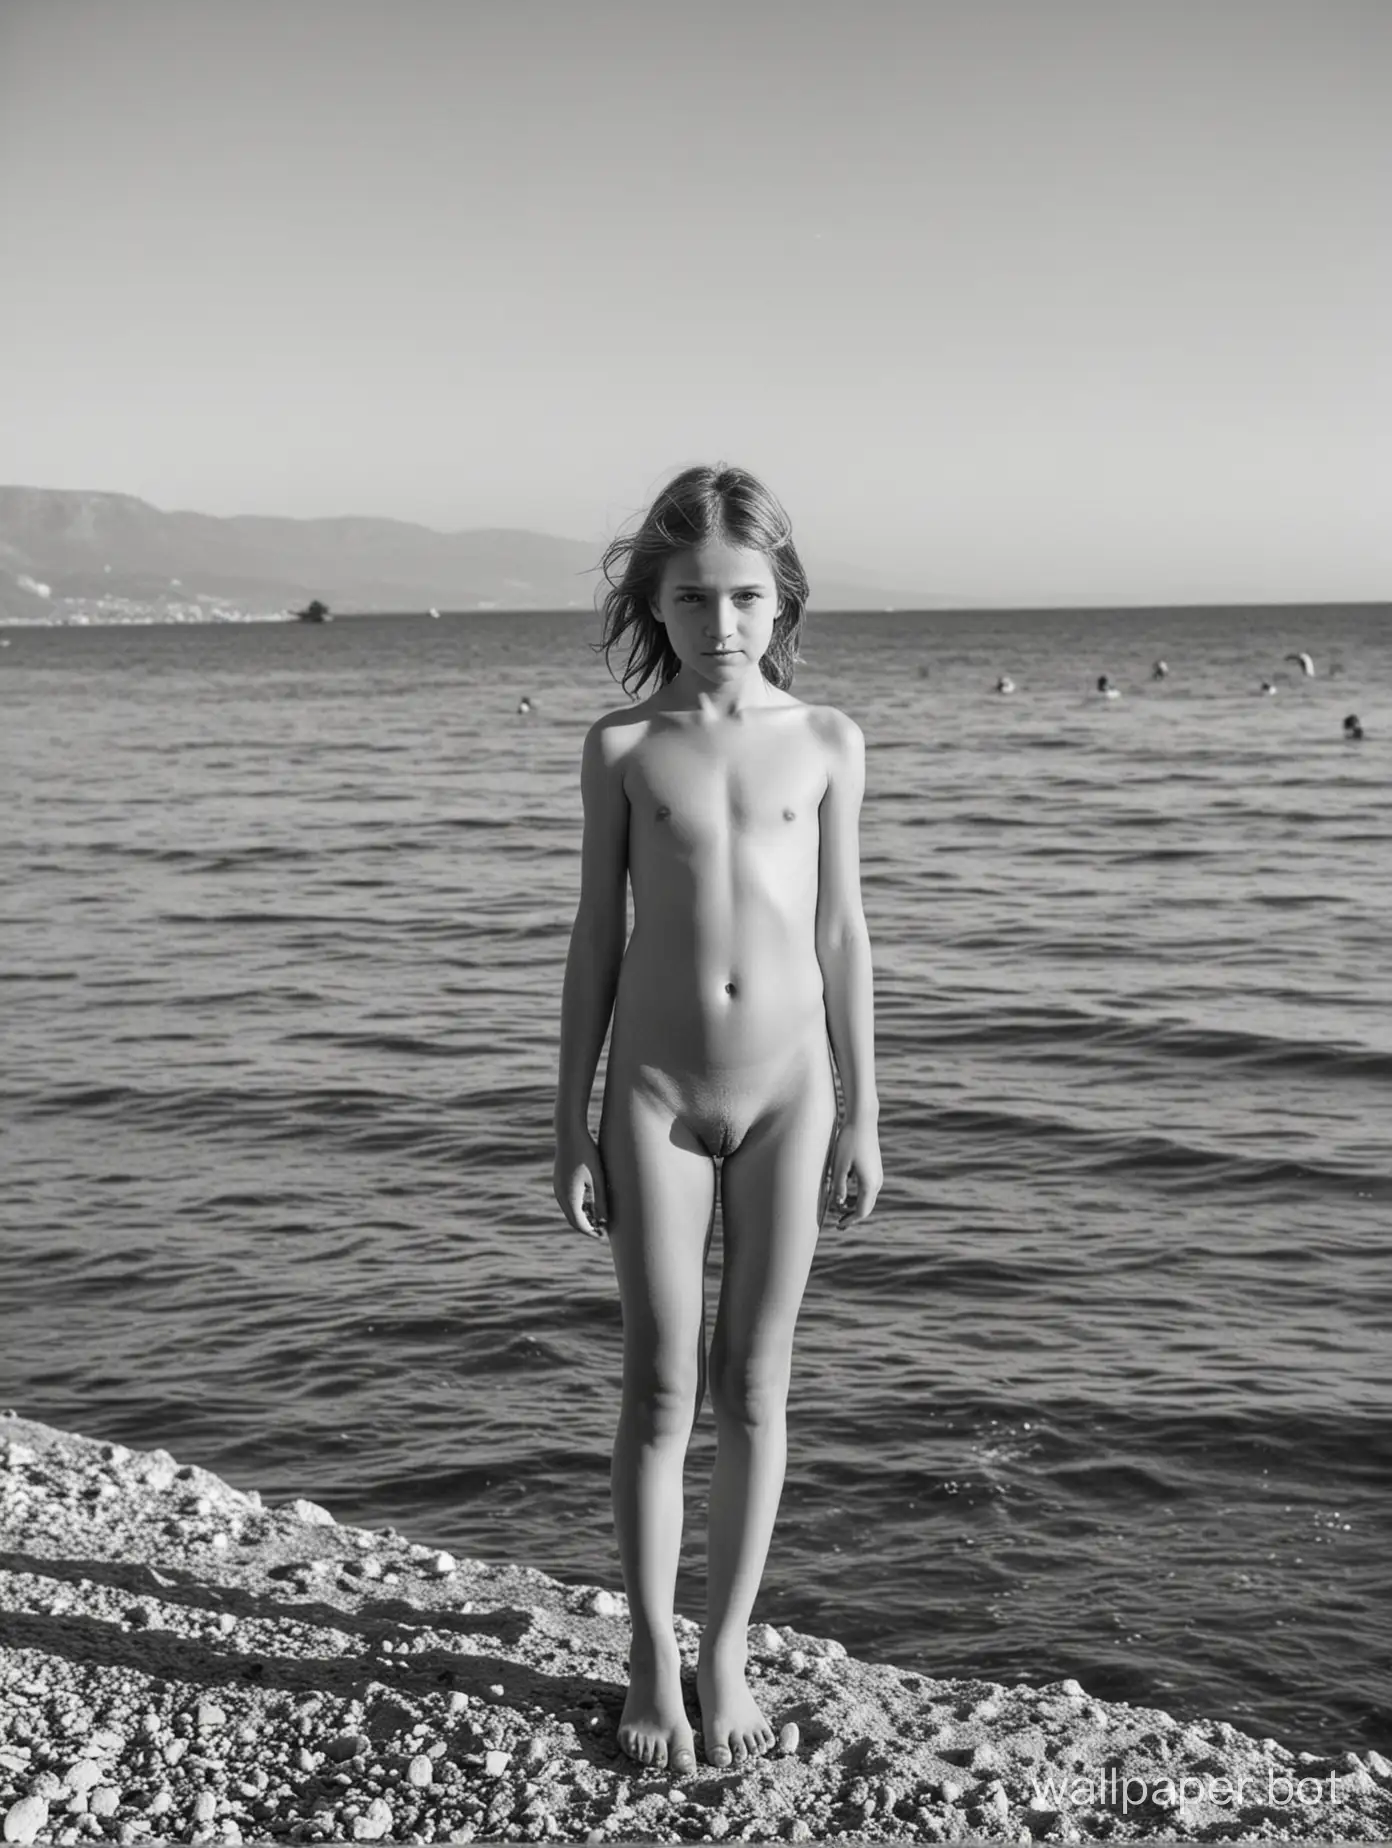 голая советская девочка 10 лет позирует у моря в Крыму, в полный рост, динамичные позы, много людей на заднем плане, чёрно-белая фотография